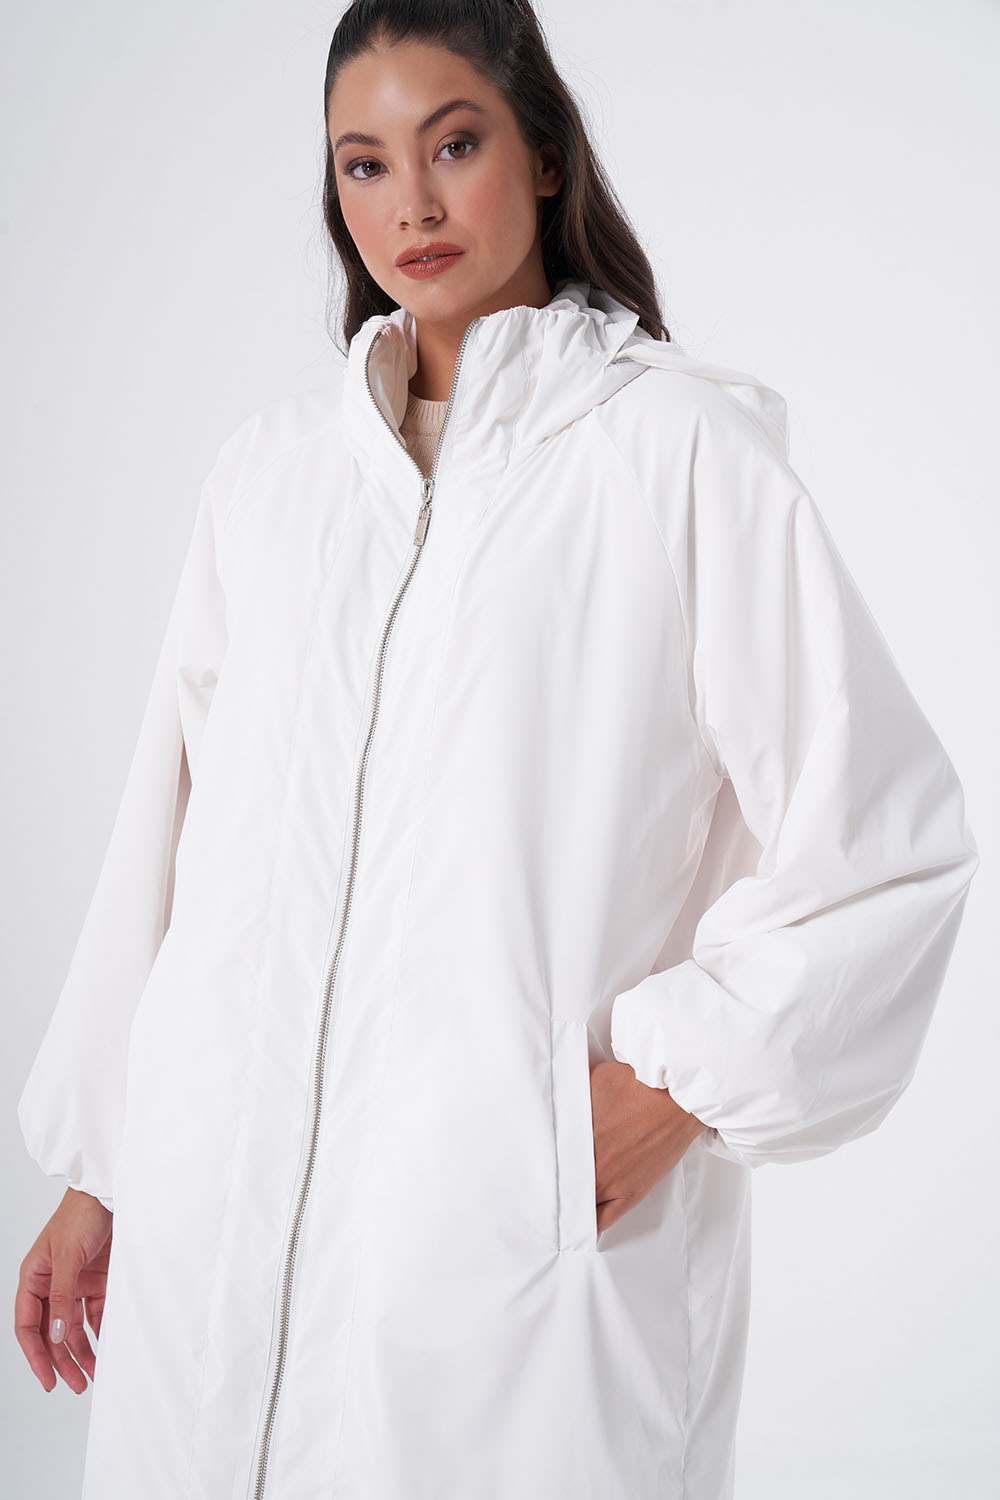 Plush Inside White Overcoat